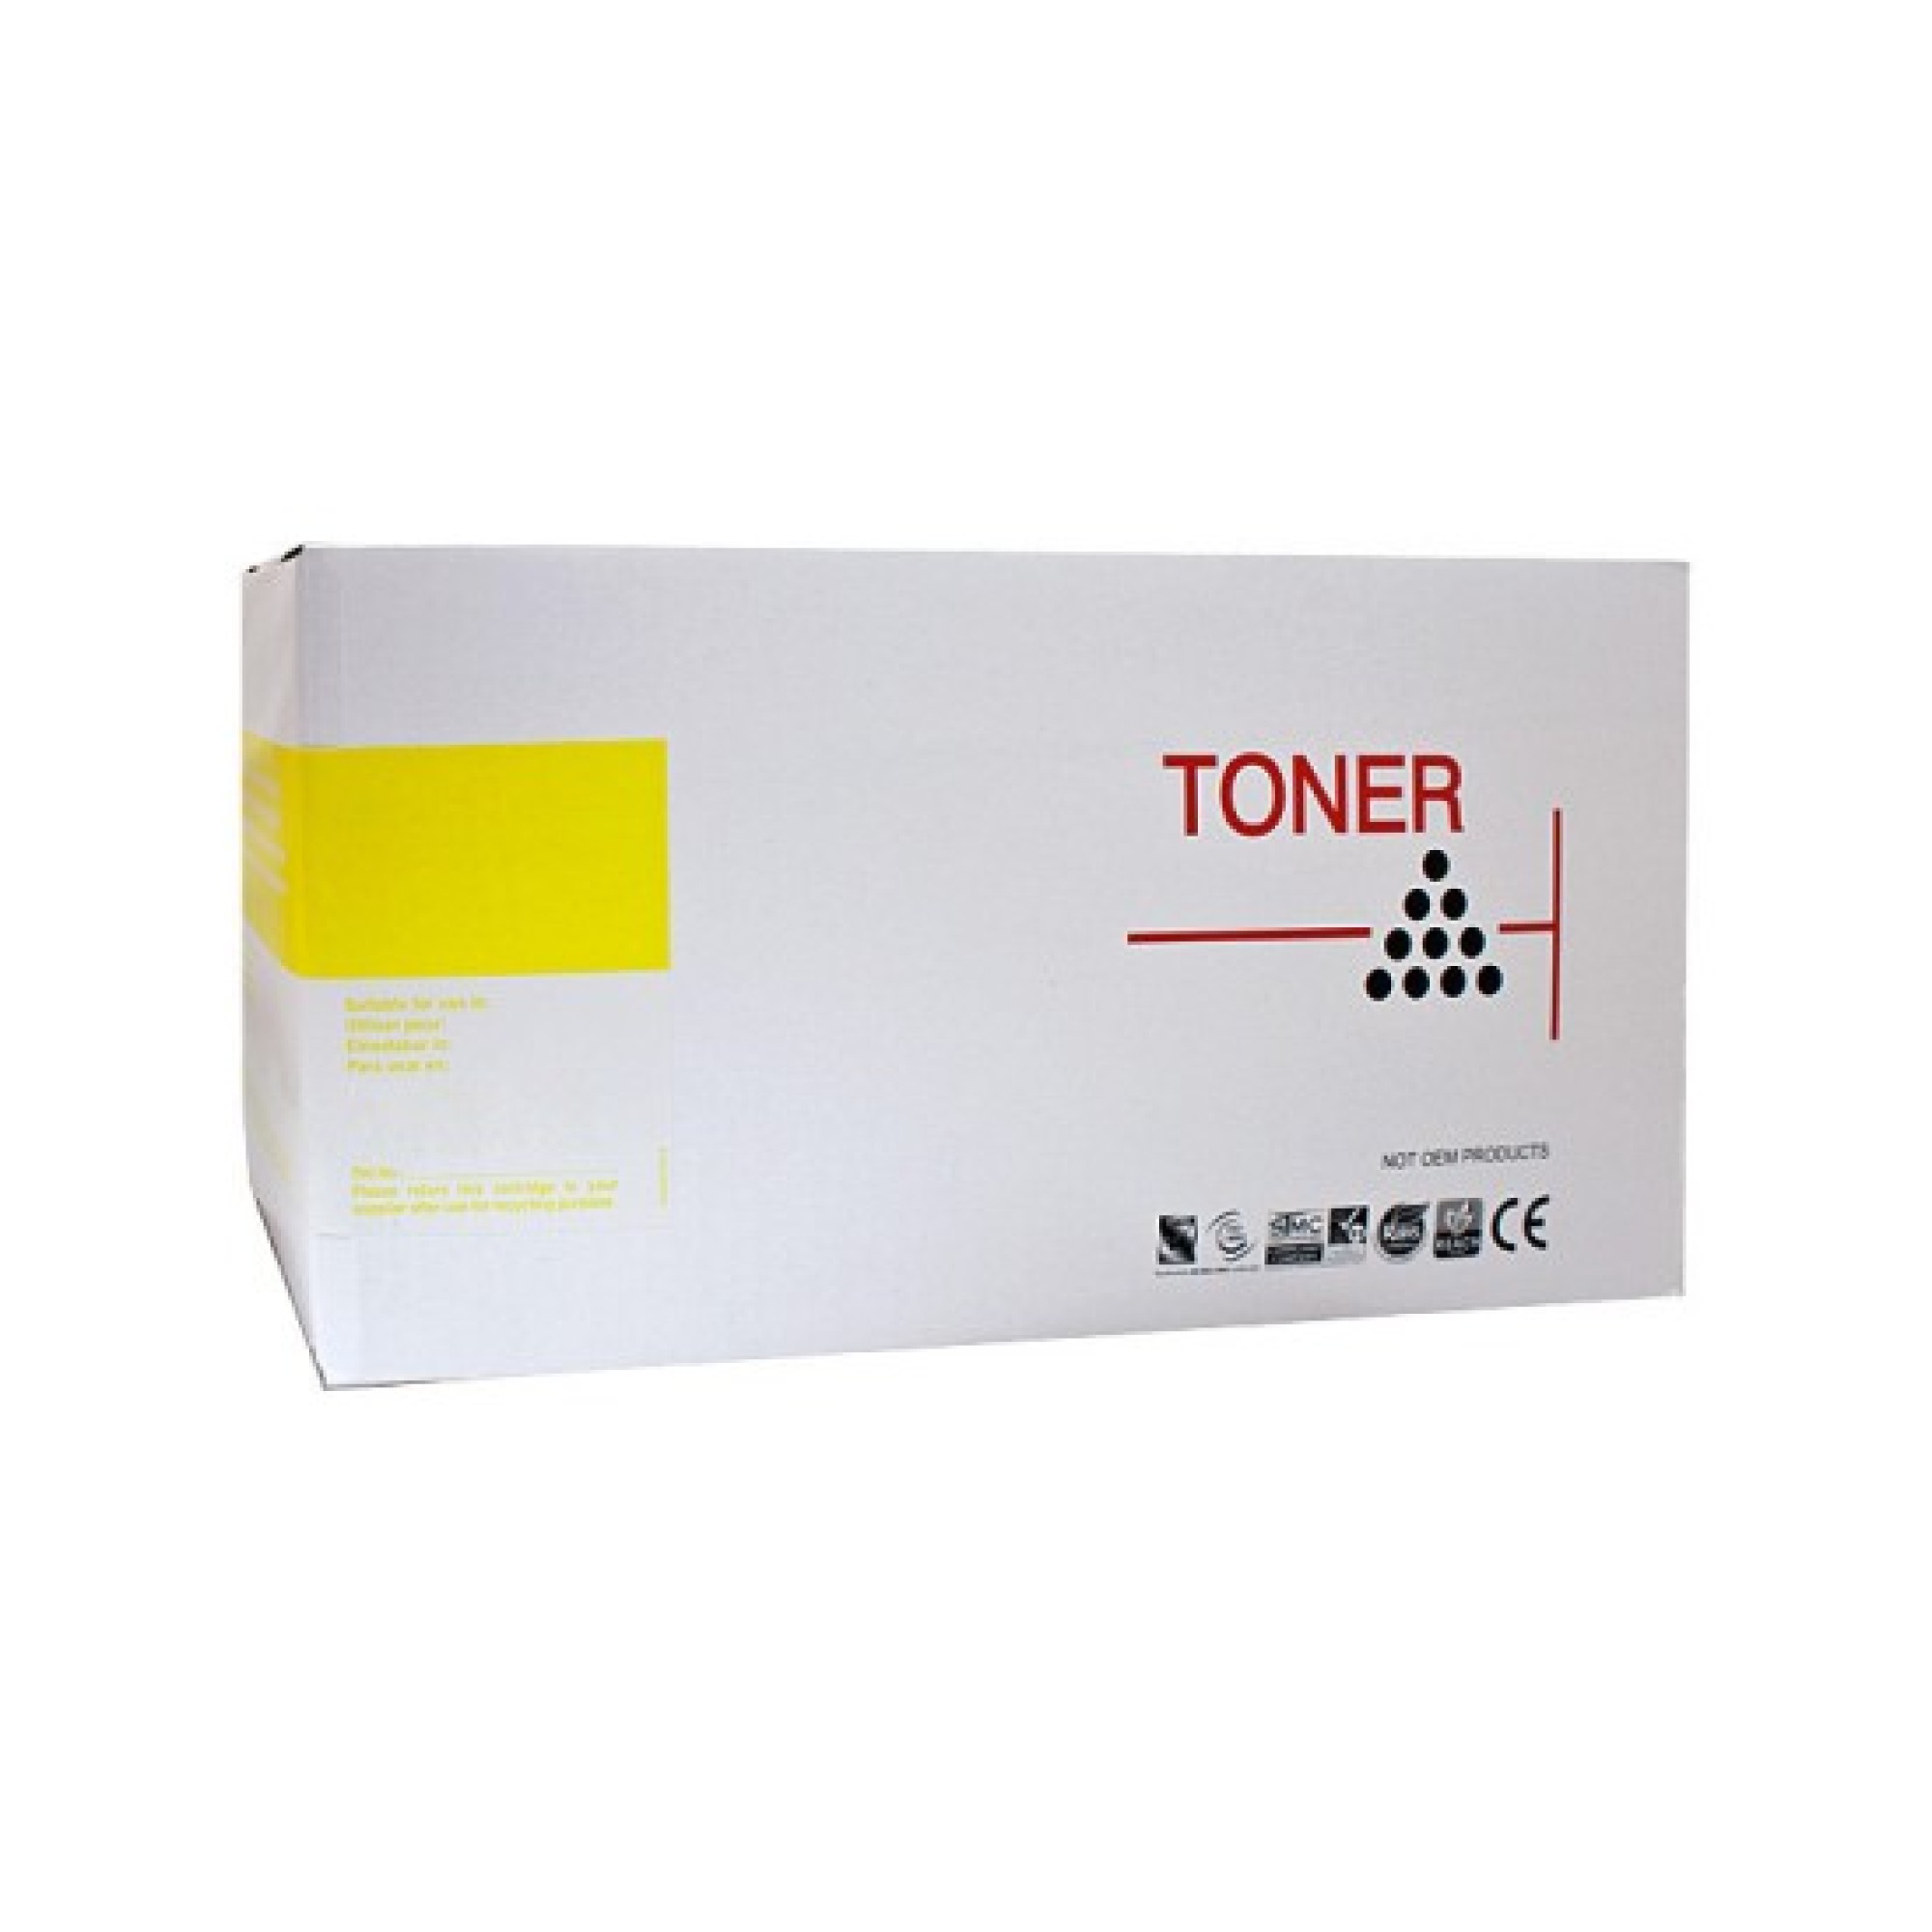 Brother TN340 High Yield Toner Cartridge Yellow